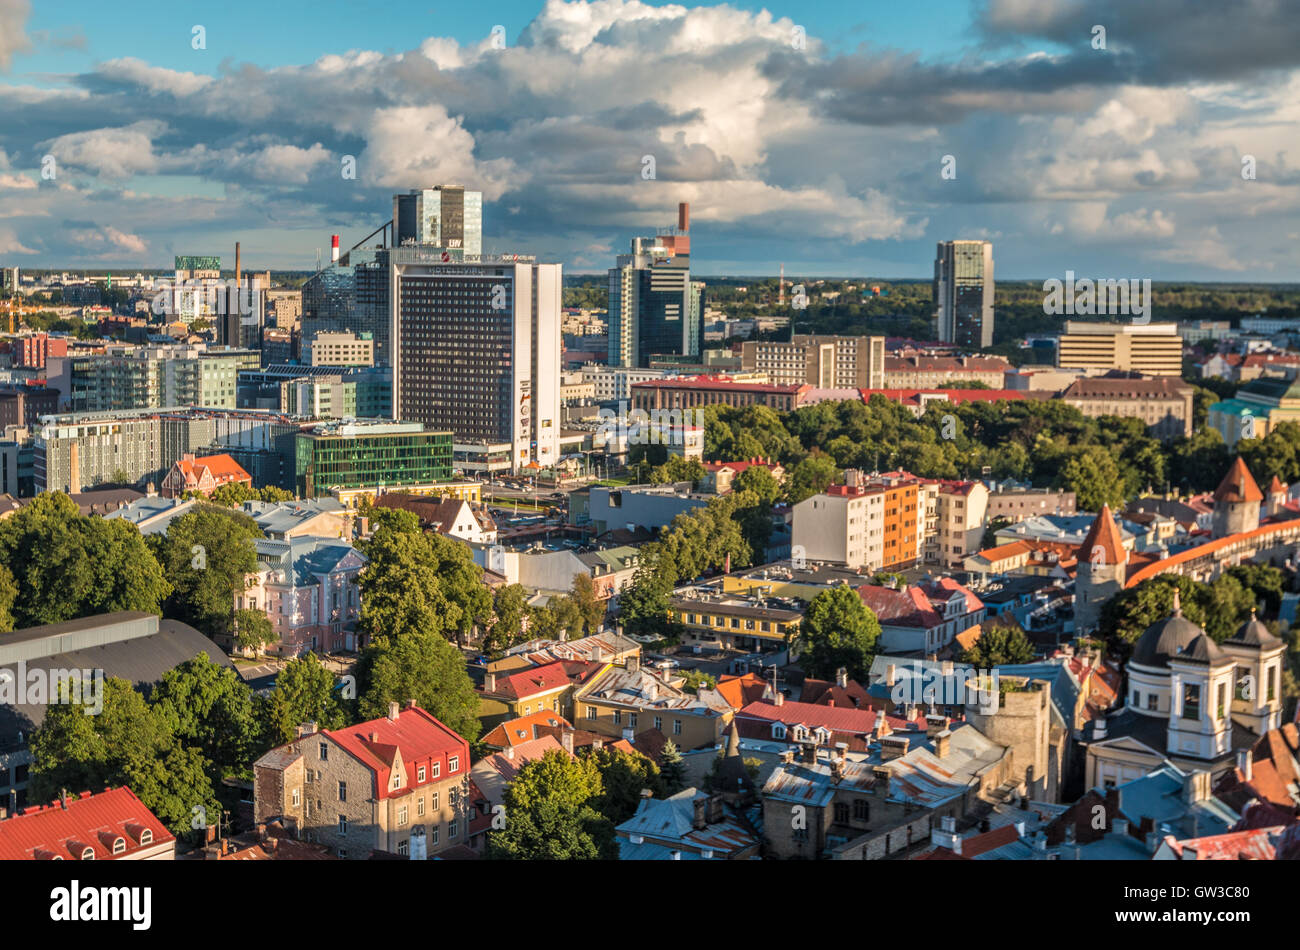 La nouvelle partie de la ville de Tallinn en Estonie Banque D'Images